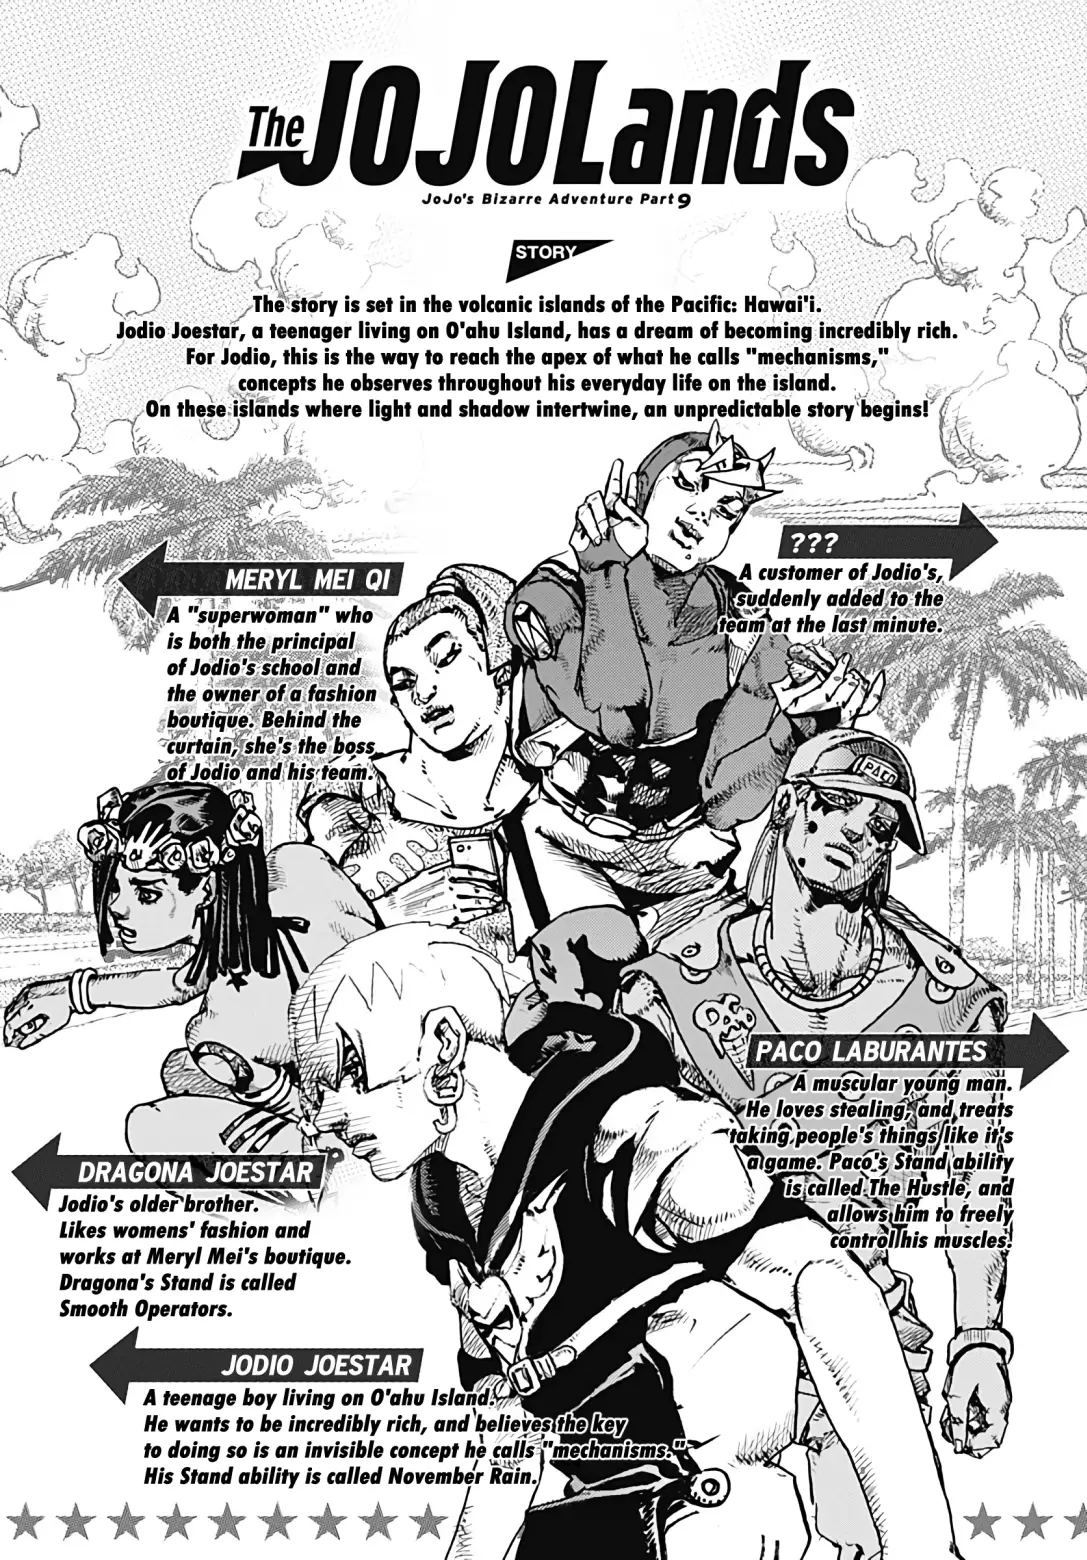 Jojo's Bizarre Adventure Part 9 - The Jojolands - 2 page 1-d53ace2e